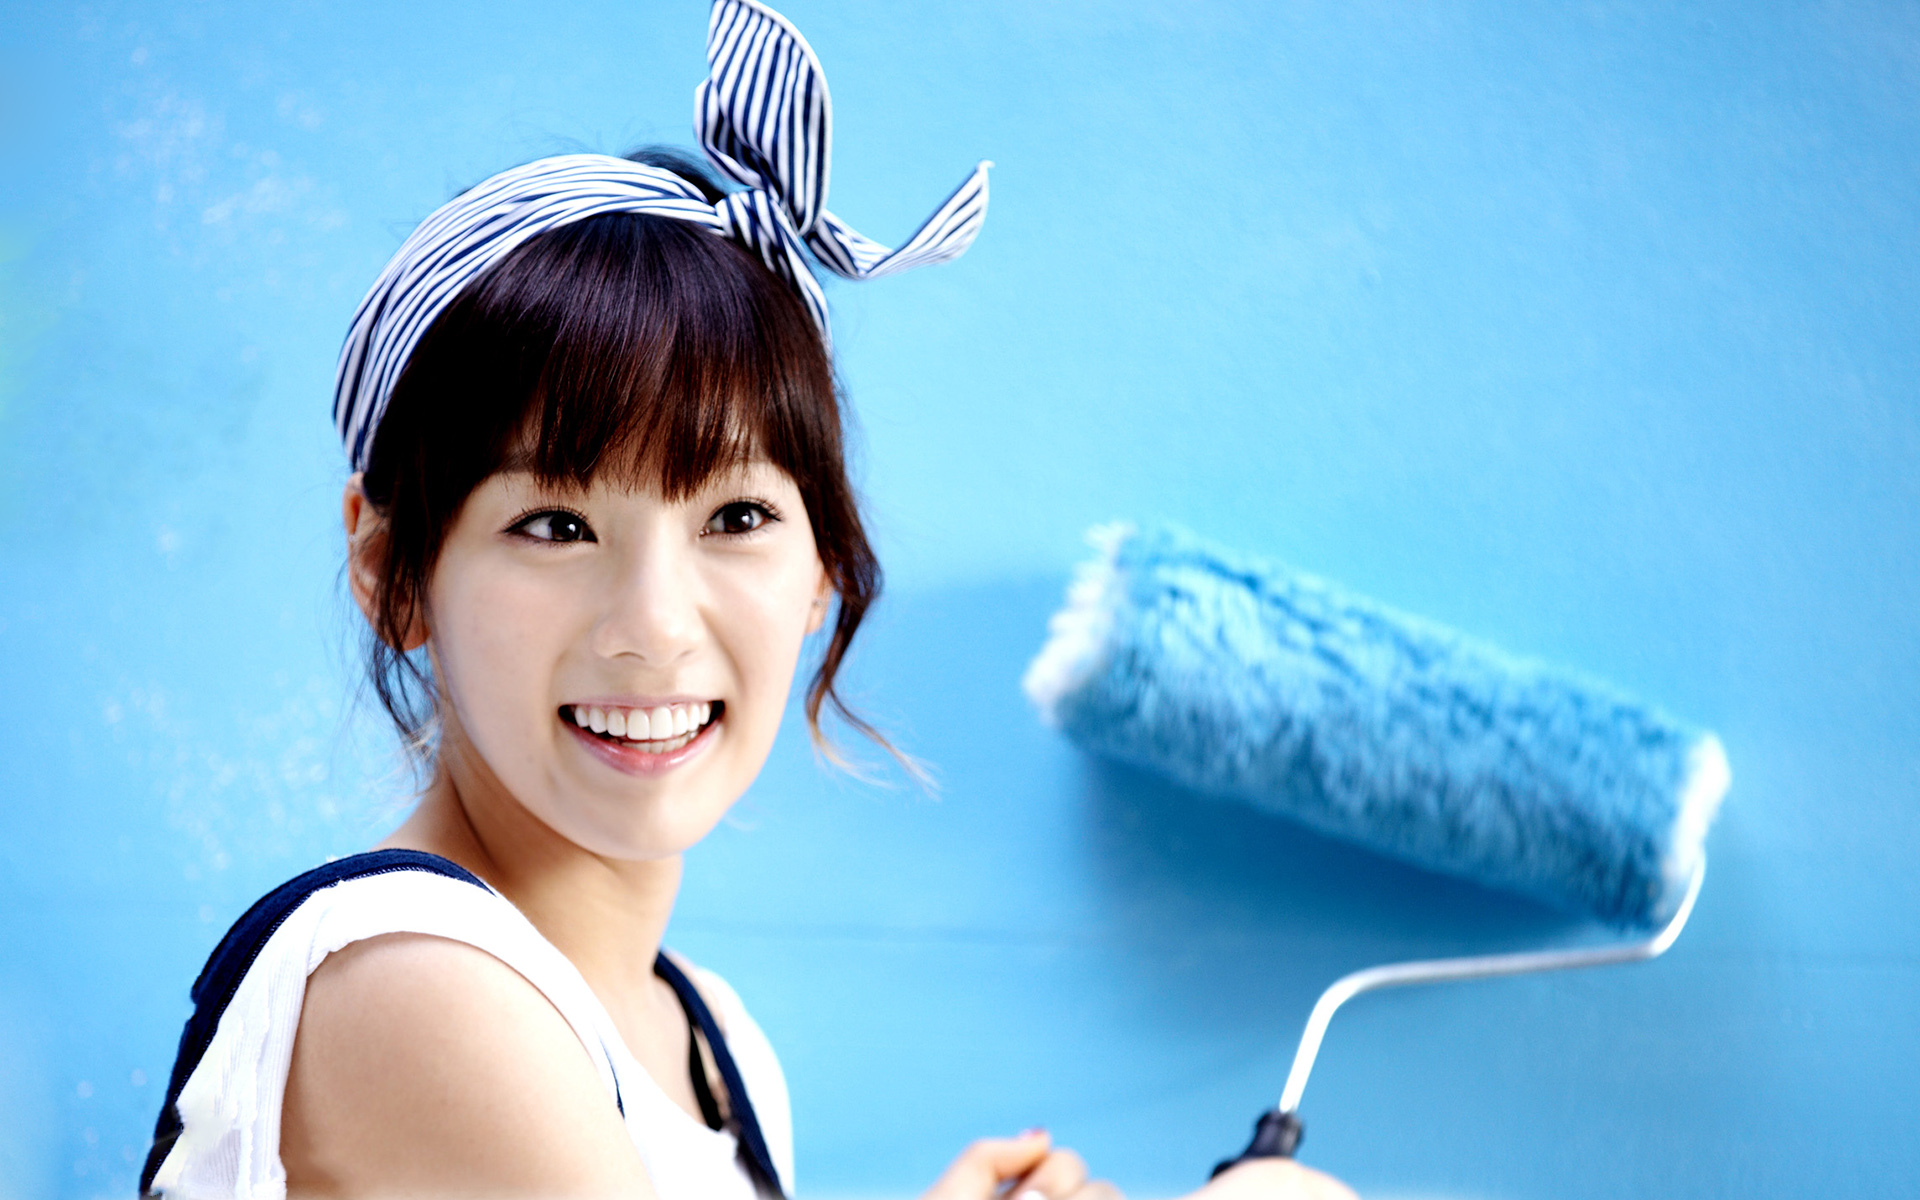 korean girl wallpaper,skin,ear,smile,happy,neck